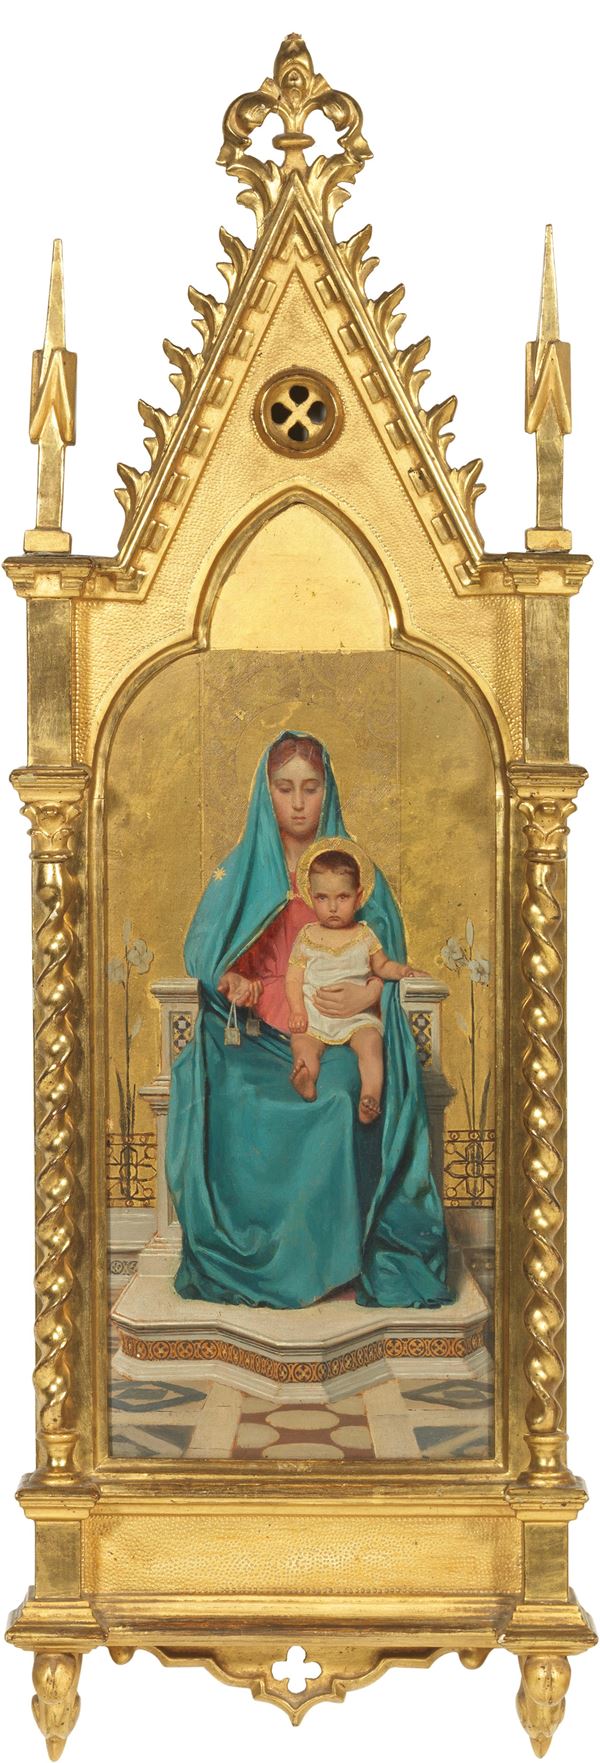 Ignoto del XIX secolo - Madonna con bambino